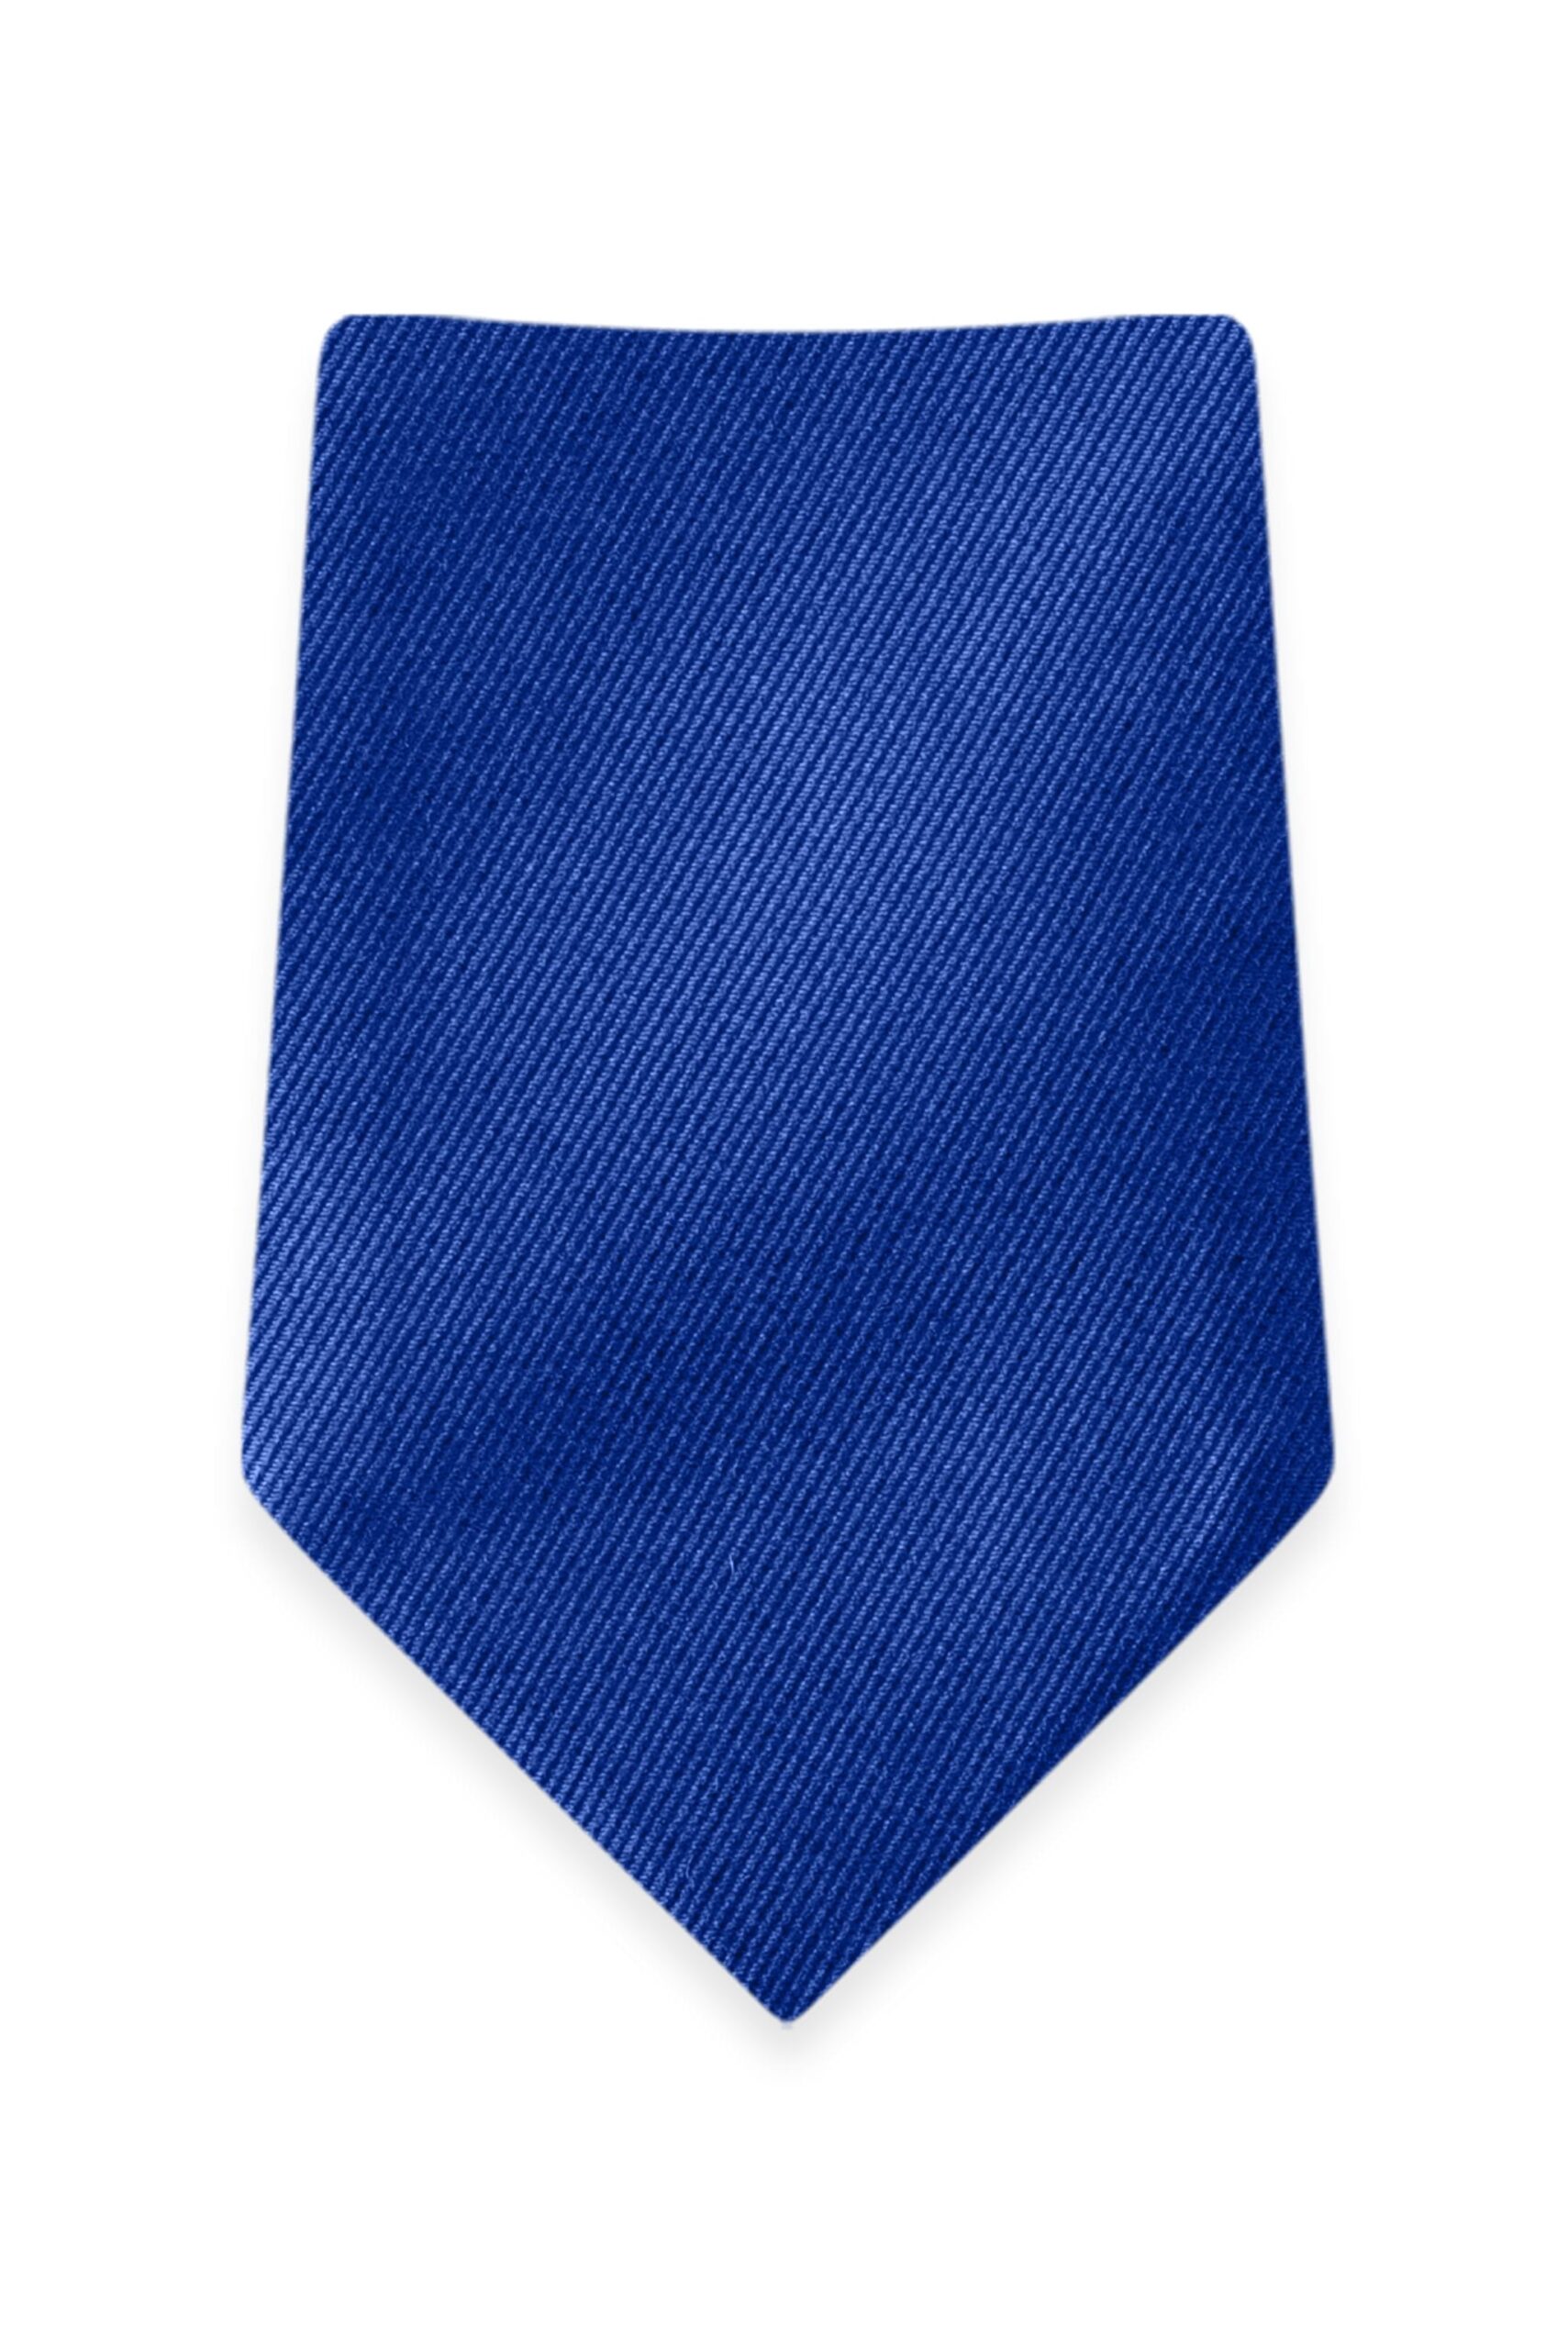 Solid Royal Self-Tie Windsor Tie 1